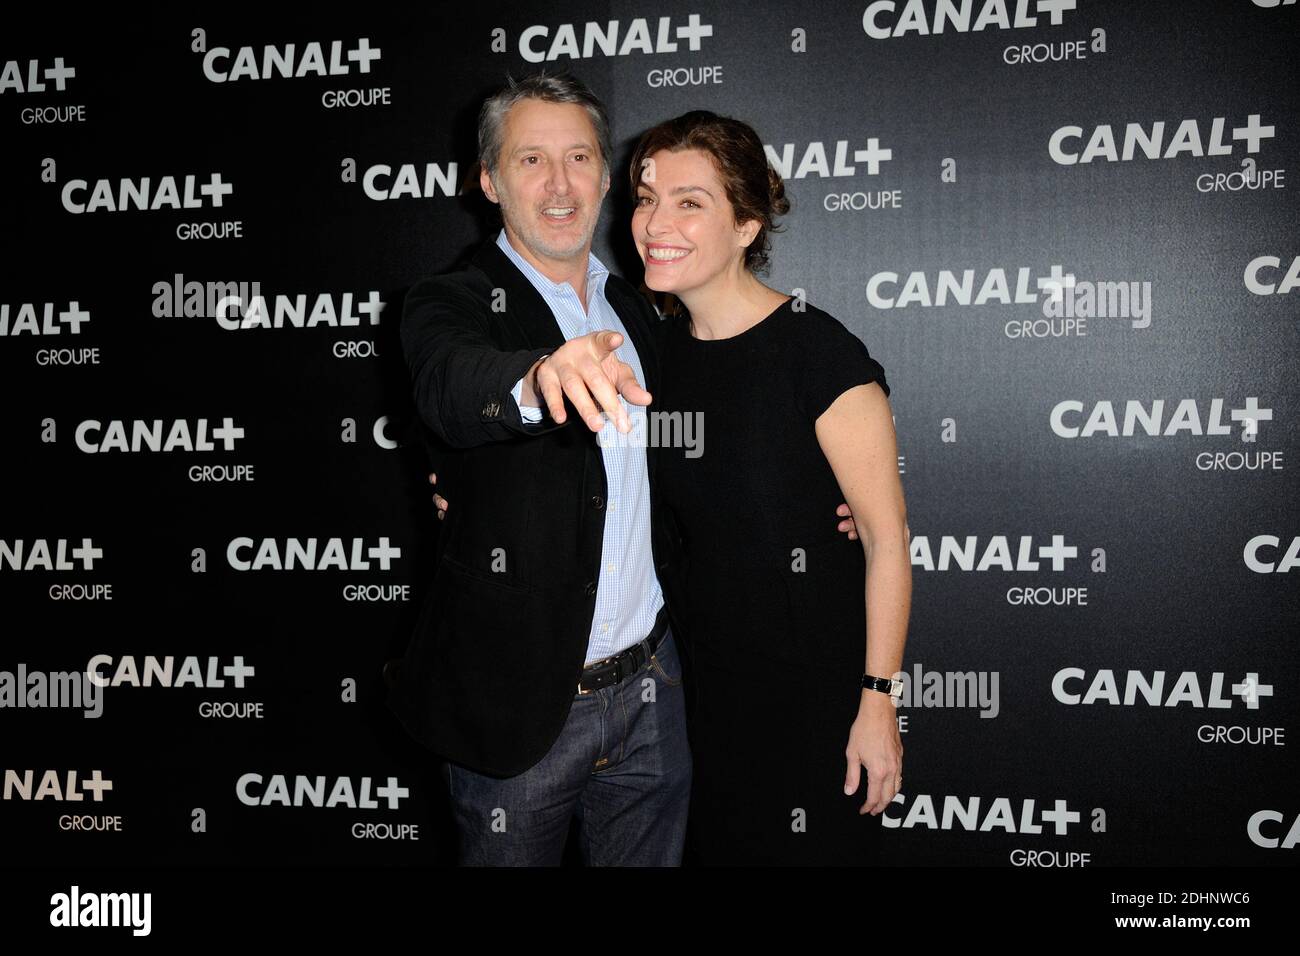 Antoine de Caunes y Daphne Roulier asistieron al Grupo Canal+ , D8 , D17 e Itele Photocoll en Manko Paris, Francia, el 03 de febrero de 2016. Foto de Alban Wyters/ABACAPRESS.COM Foto de stock